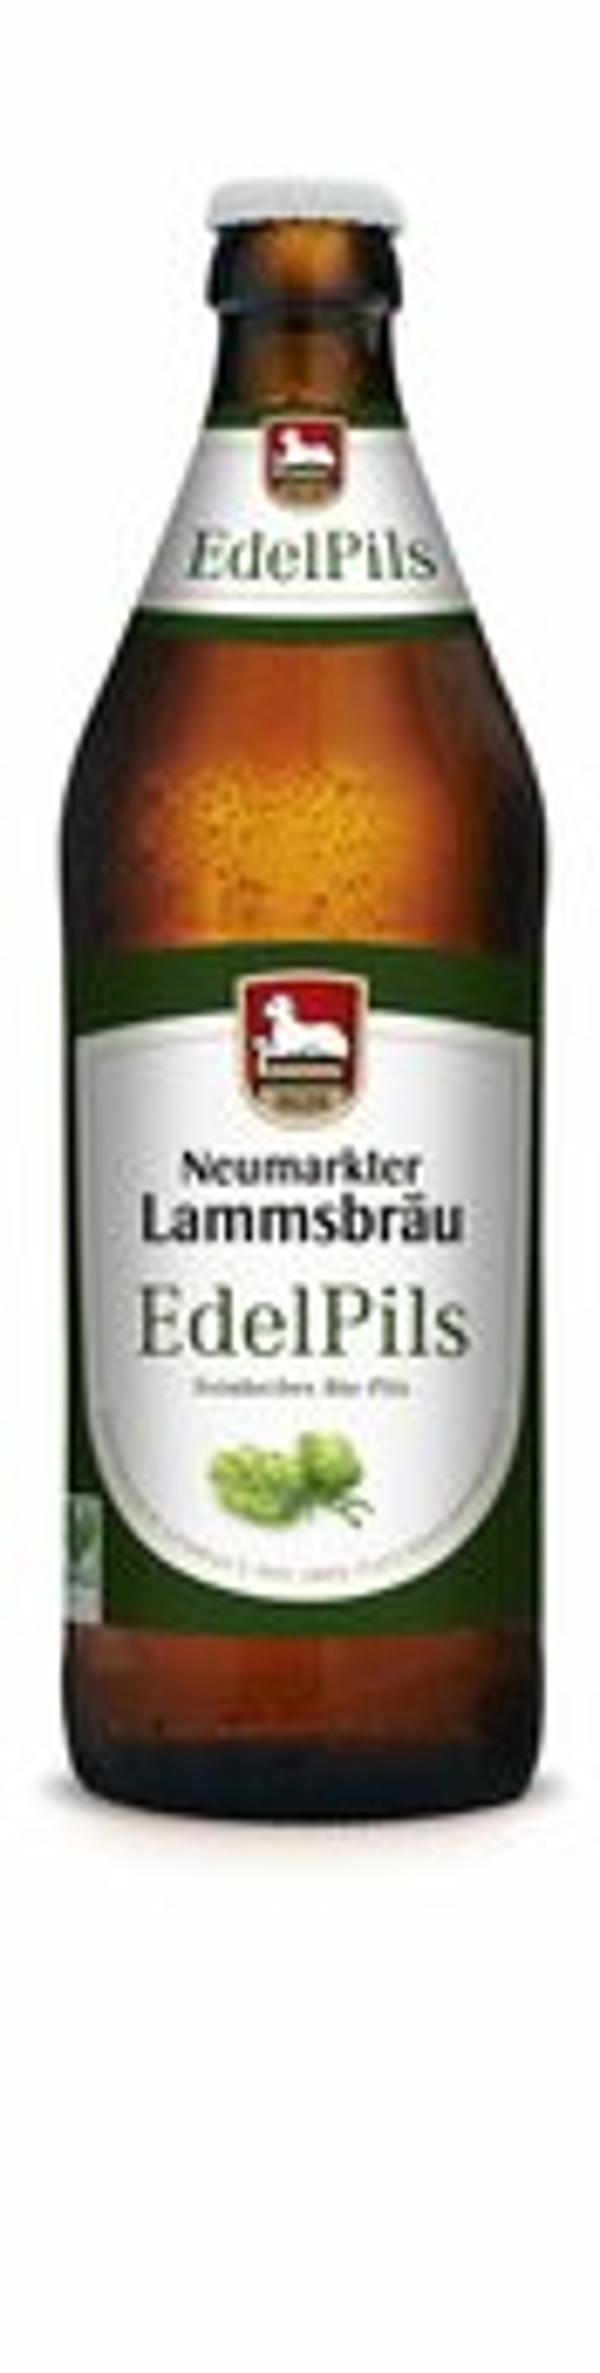 Produktfoto zu Lammsbräu Edelpils 0,5l